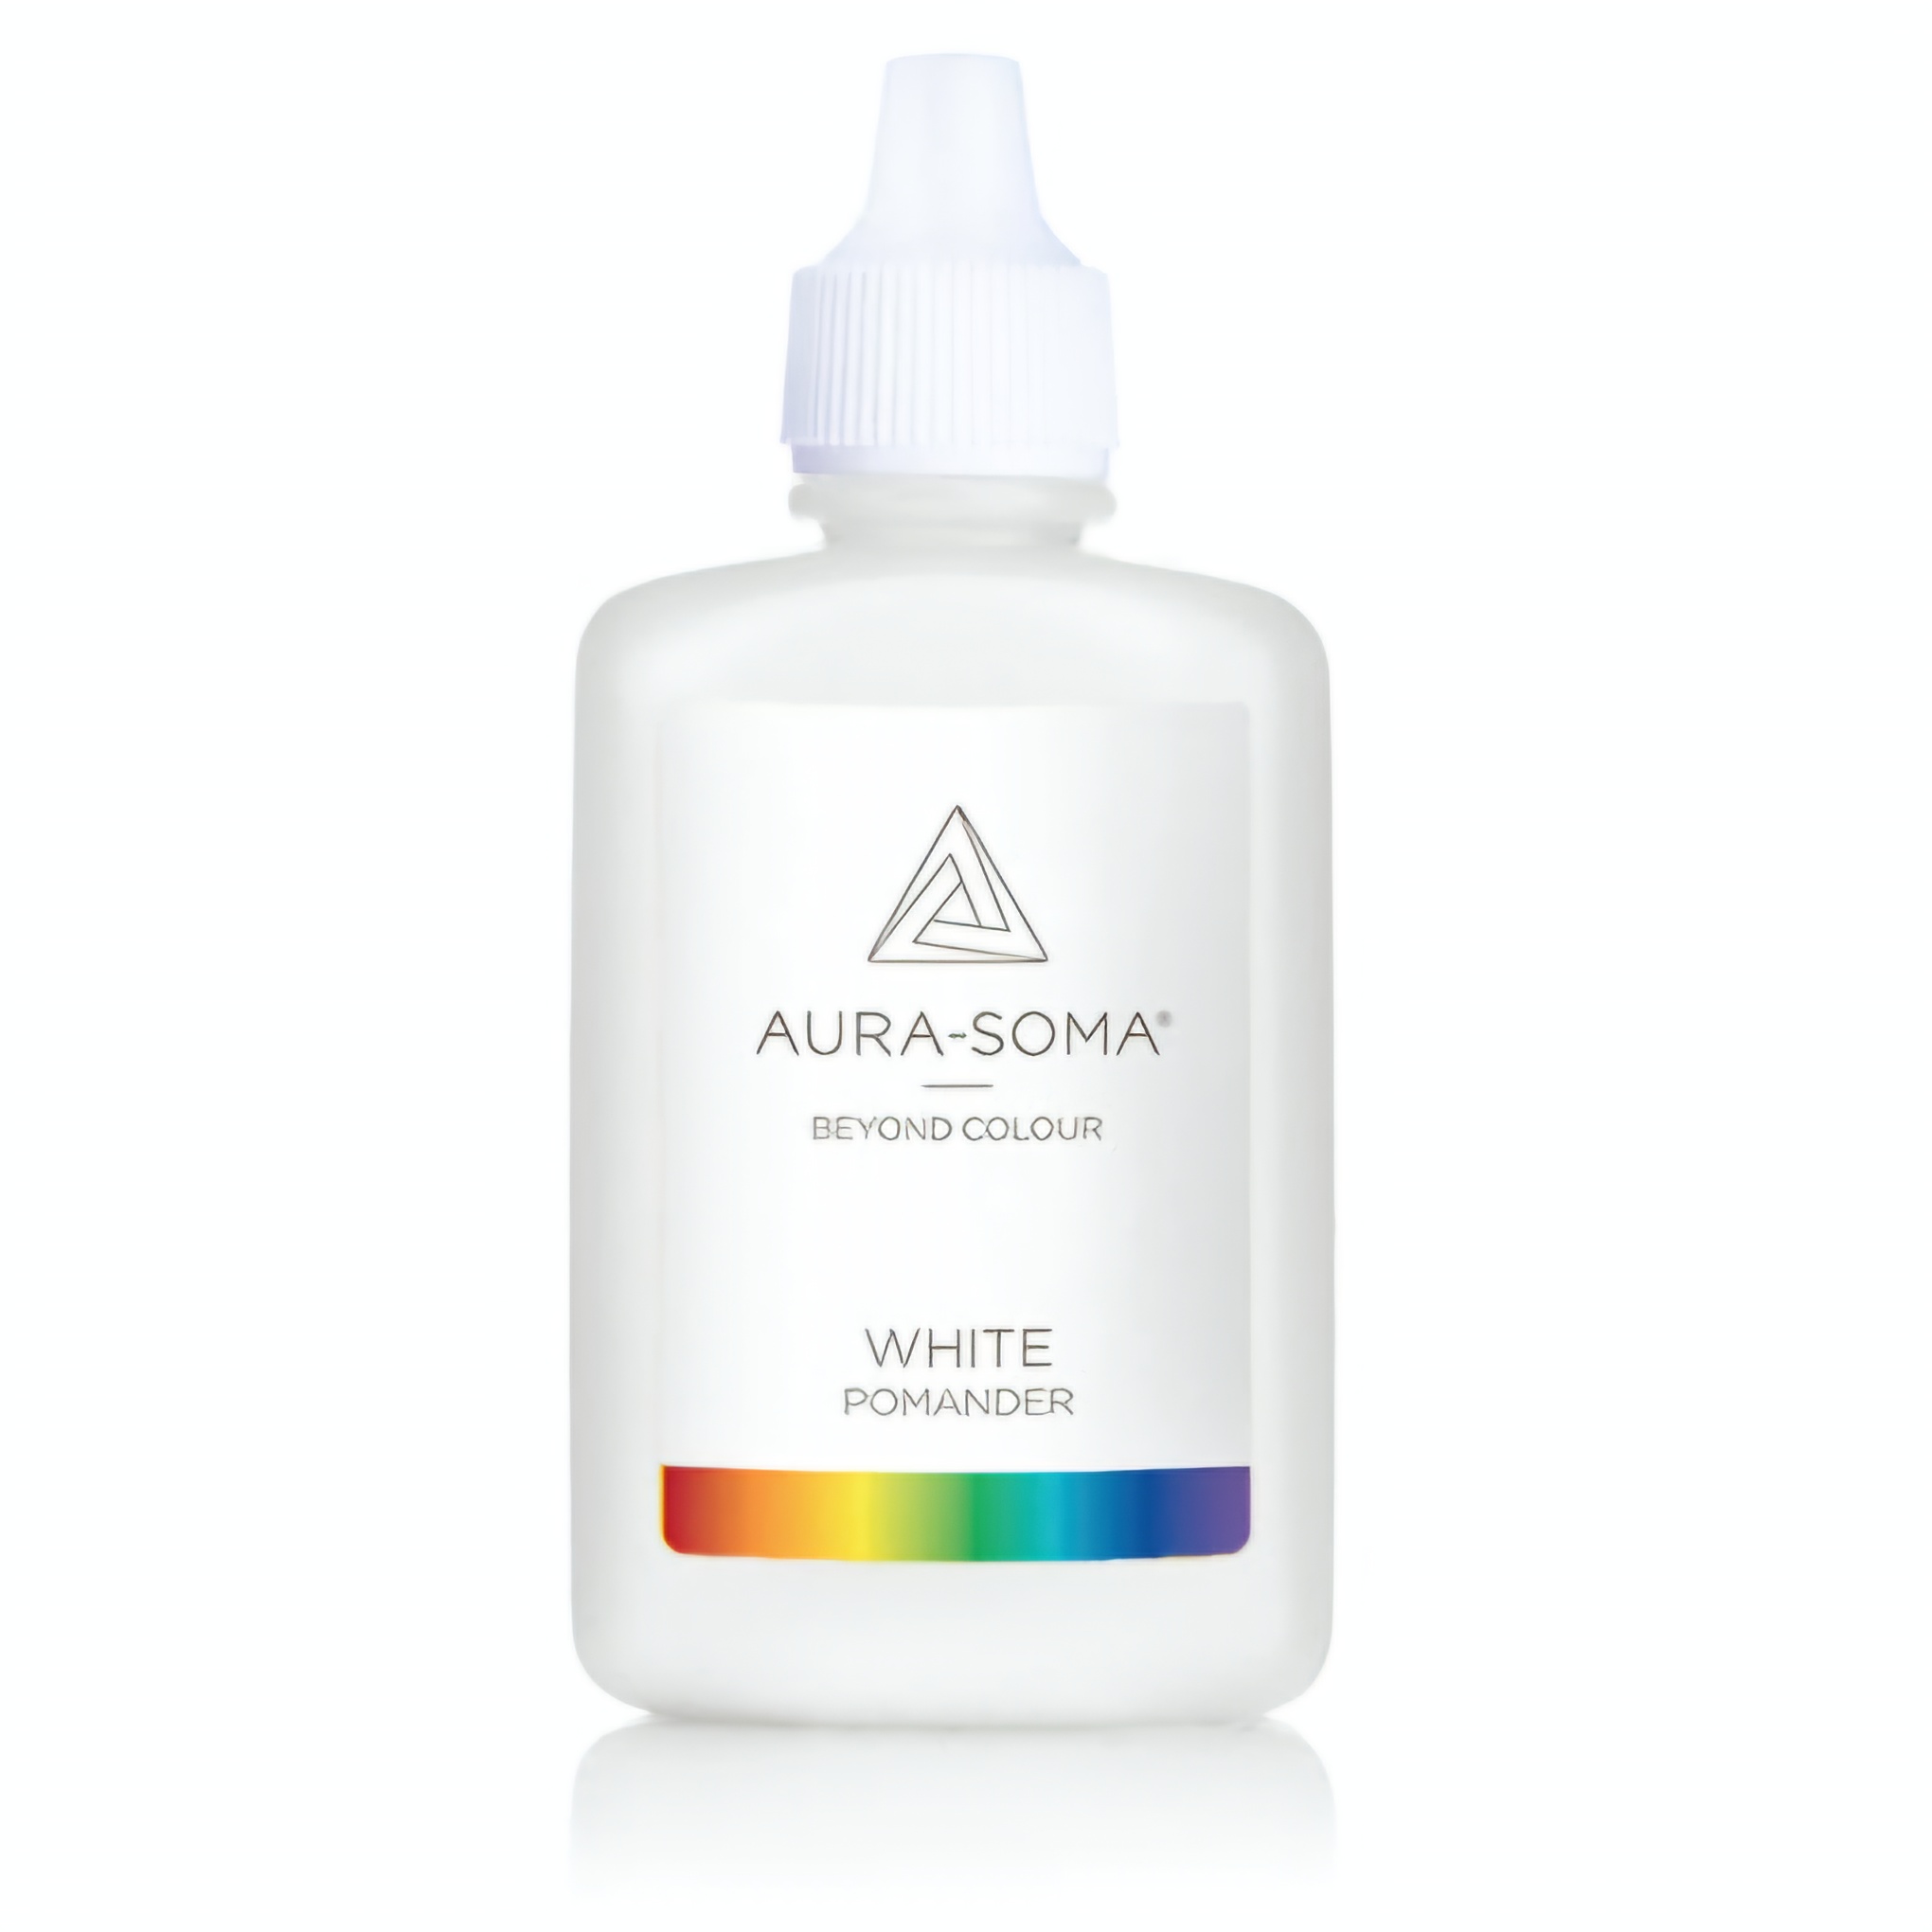 Aura-Soma pomander p01 Bílý je esence v plastové lahvičce ve verzi 25ml. Na etiketě je duhový pruh a značka Aura-Soma a nápis 